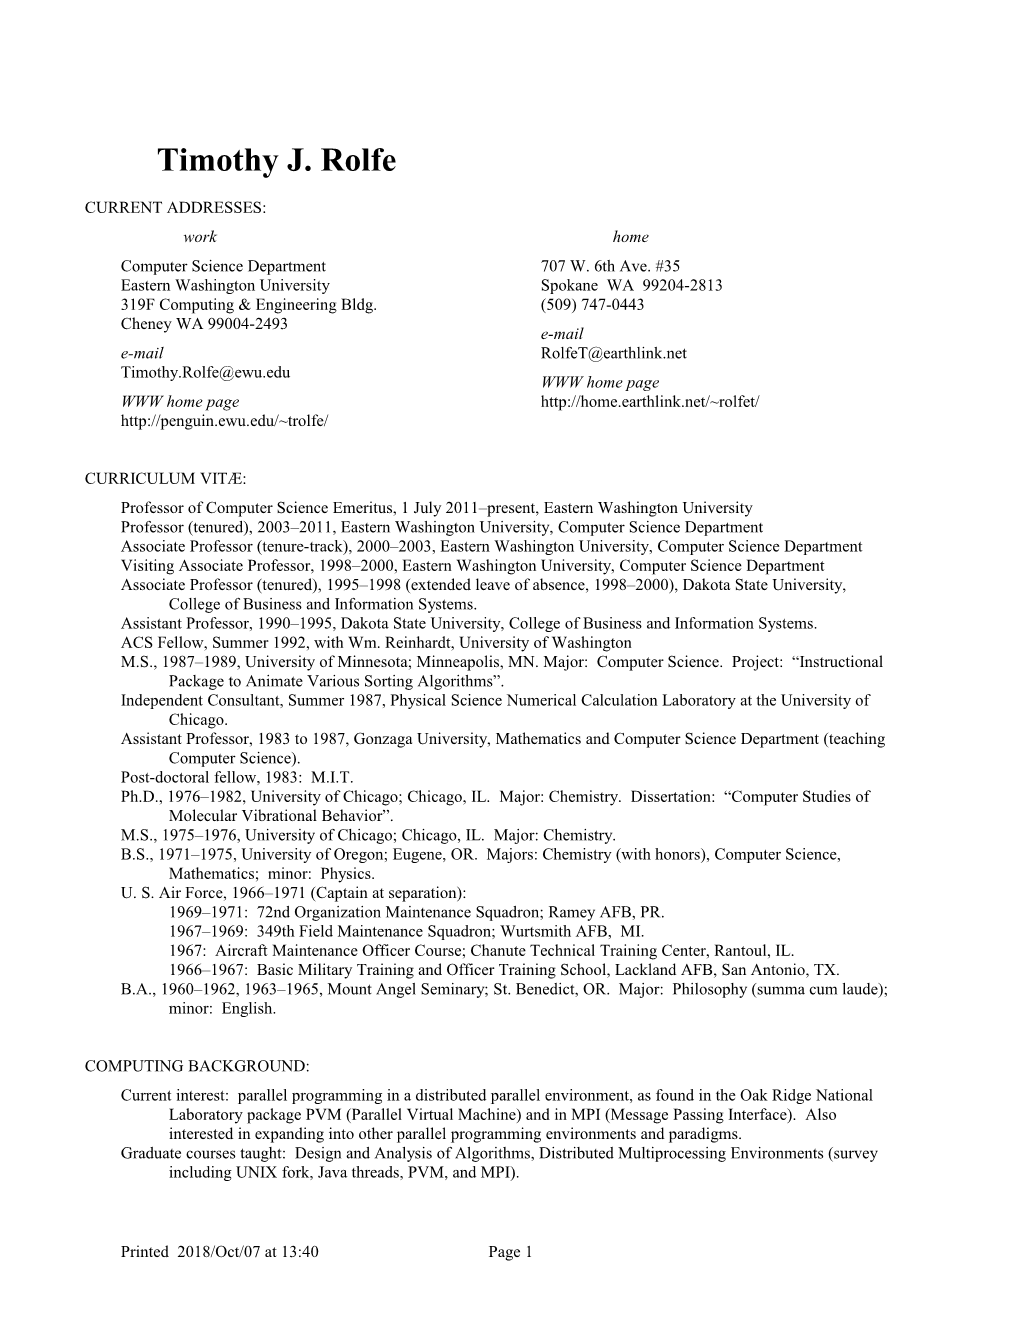 Resume for Timothy J. Rolfe